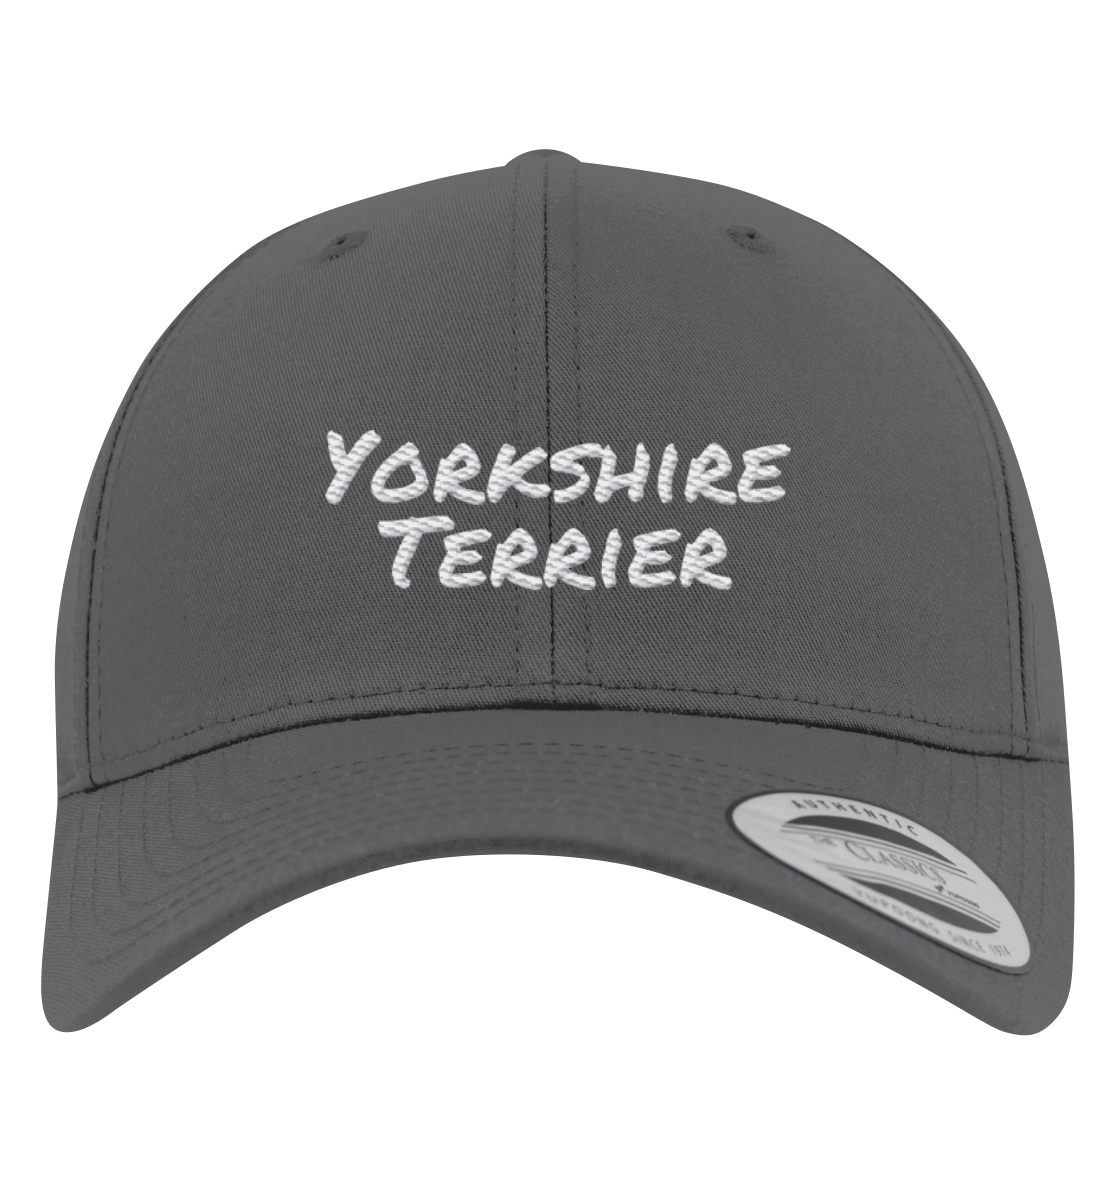 Yorkshire Terrier - Premium Baseball Cap